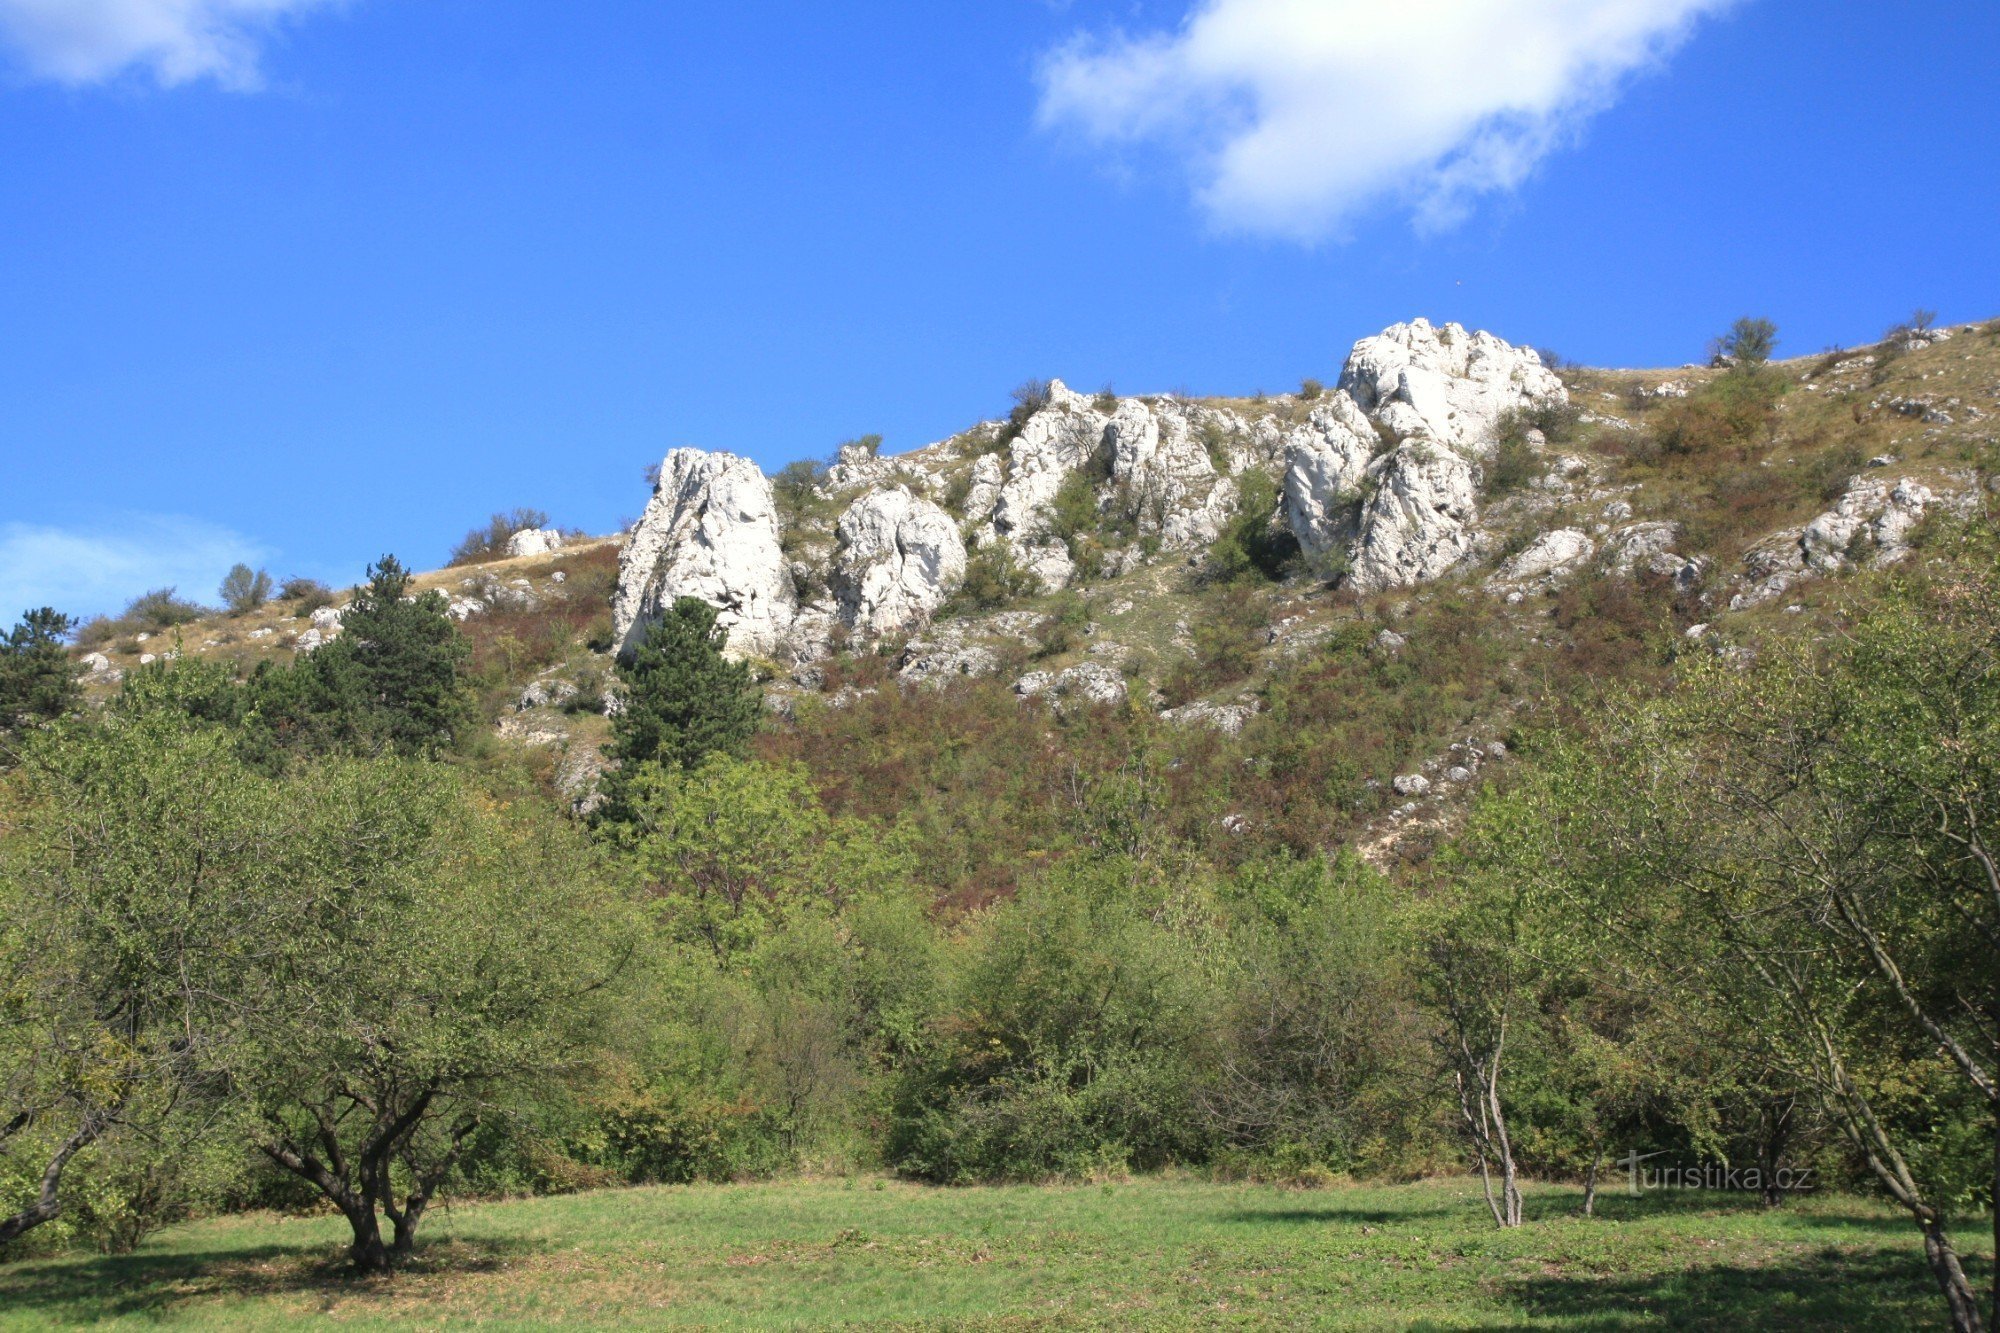 De Beierse rotsen bevinden zich ook op de westelijke helling van het reservaat